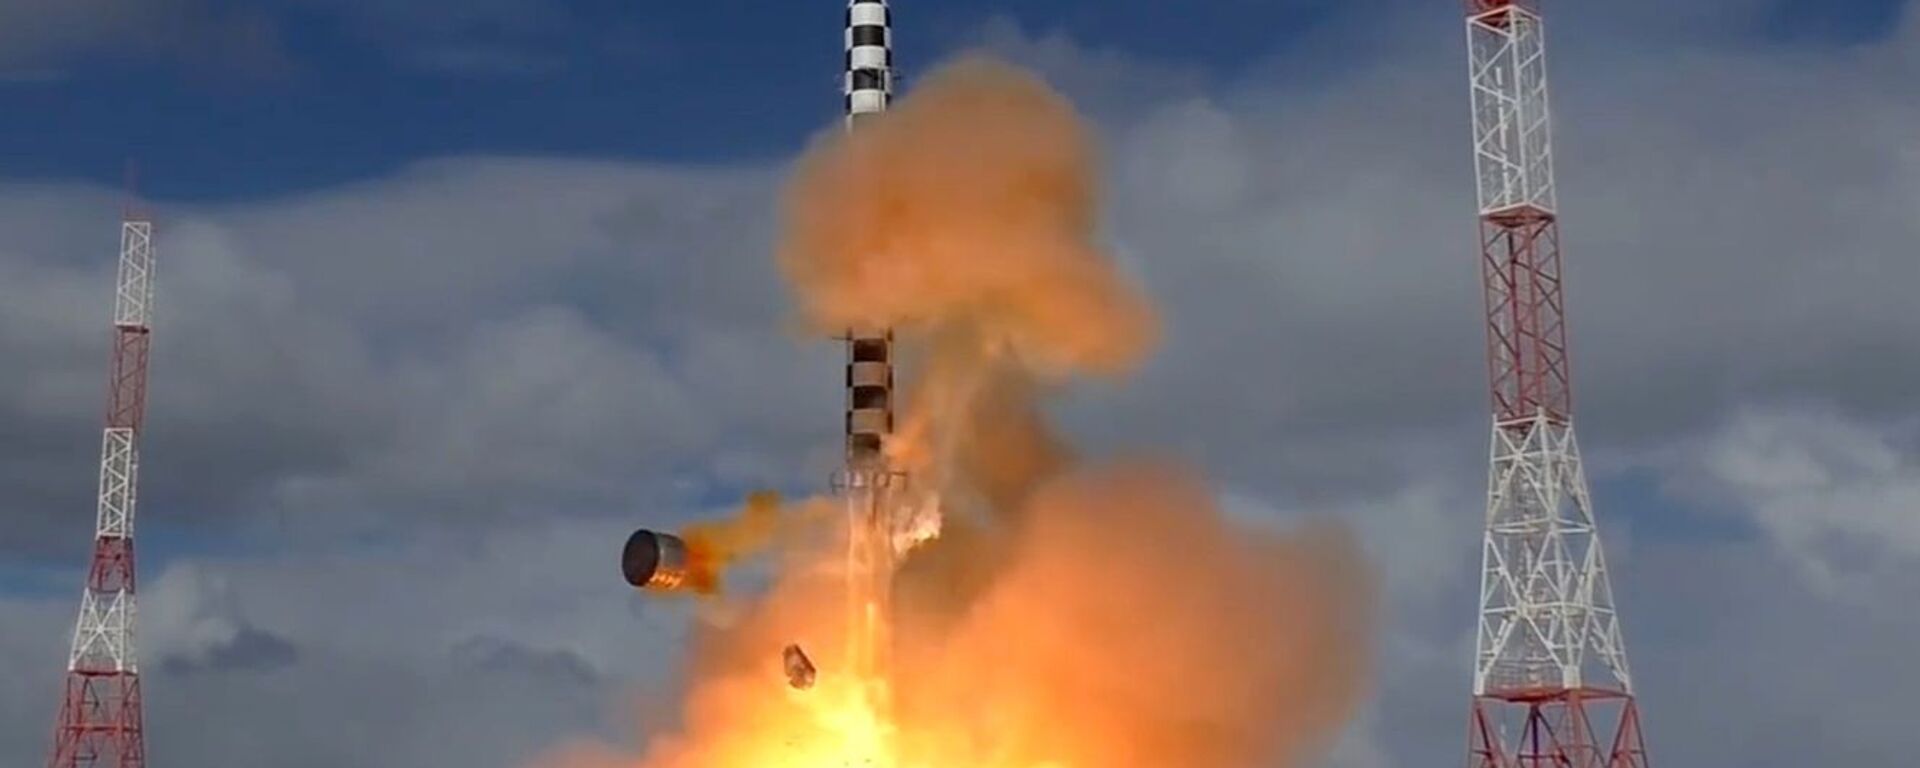 Запуск ракеты «Сармат» с космодрома «Плесецк» - Sputnik Latvija, 1920, 23.12.2021